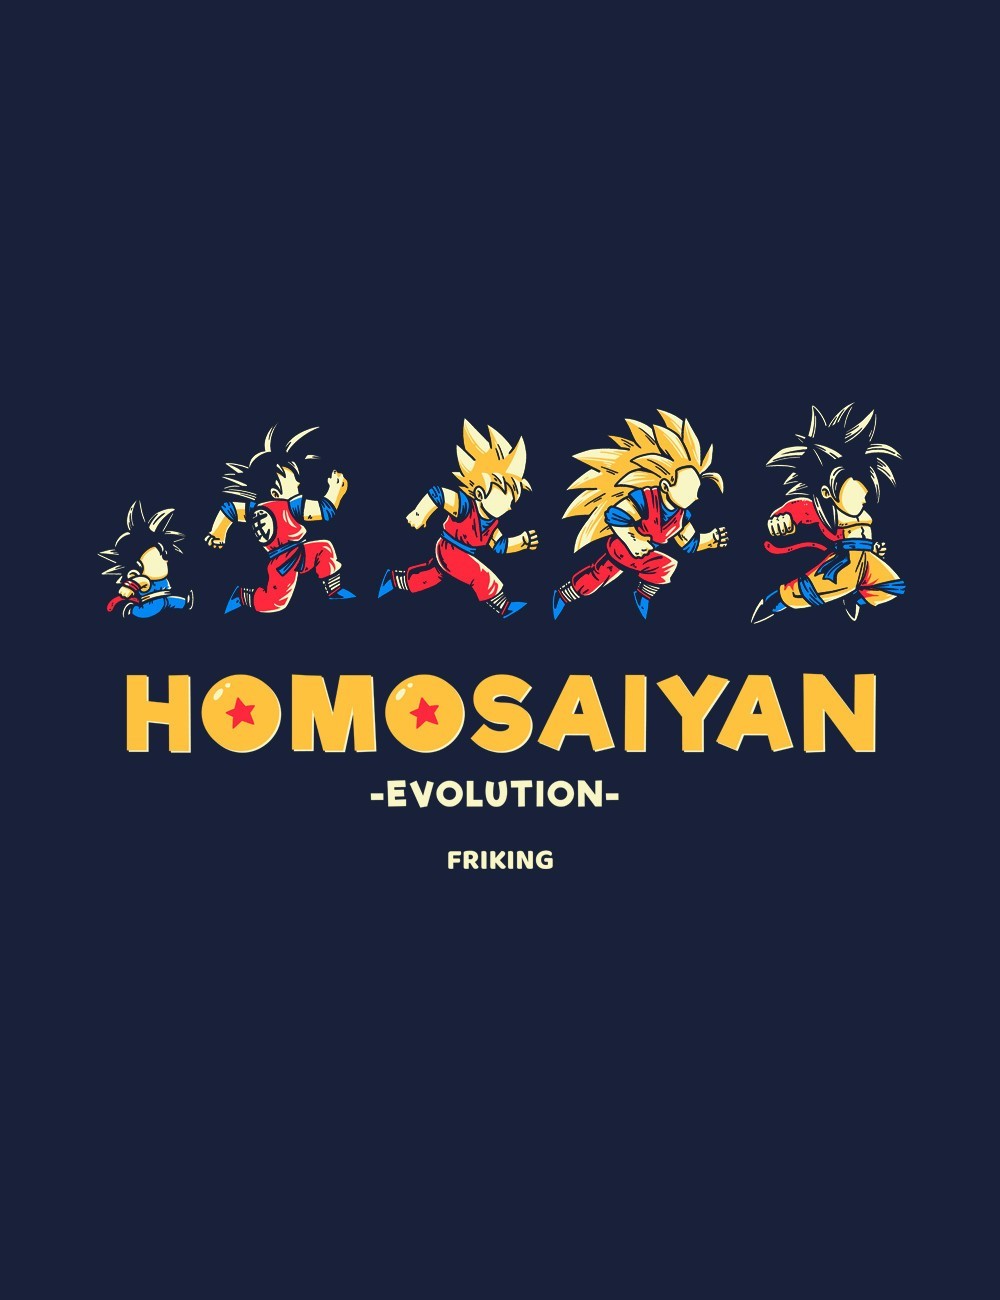  Homosaiyan Evolution